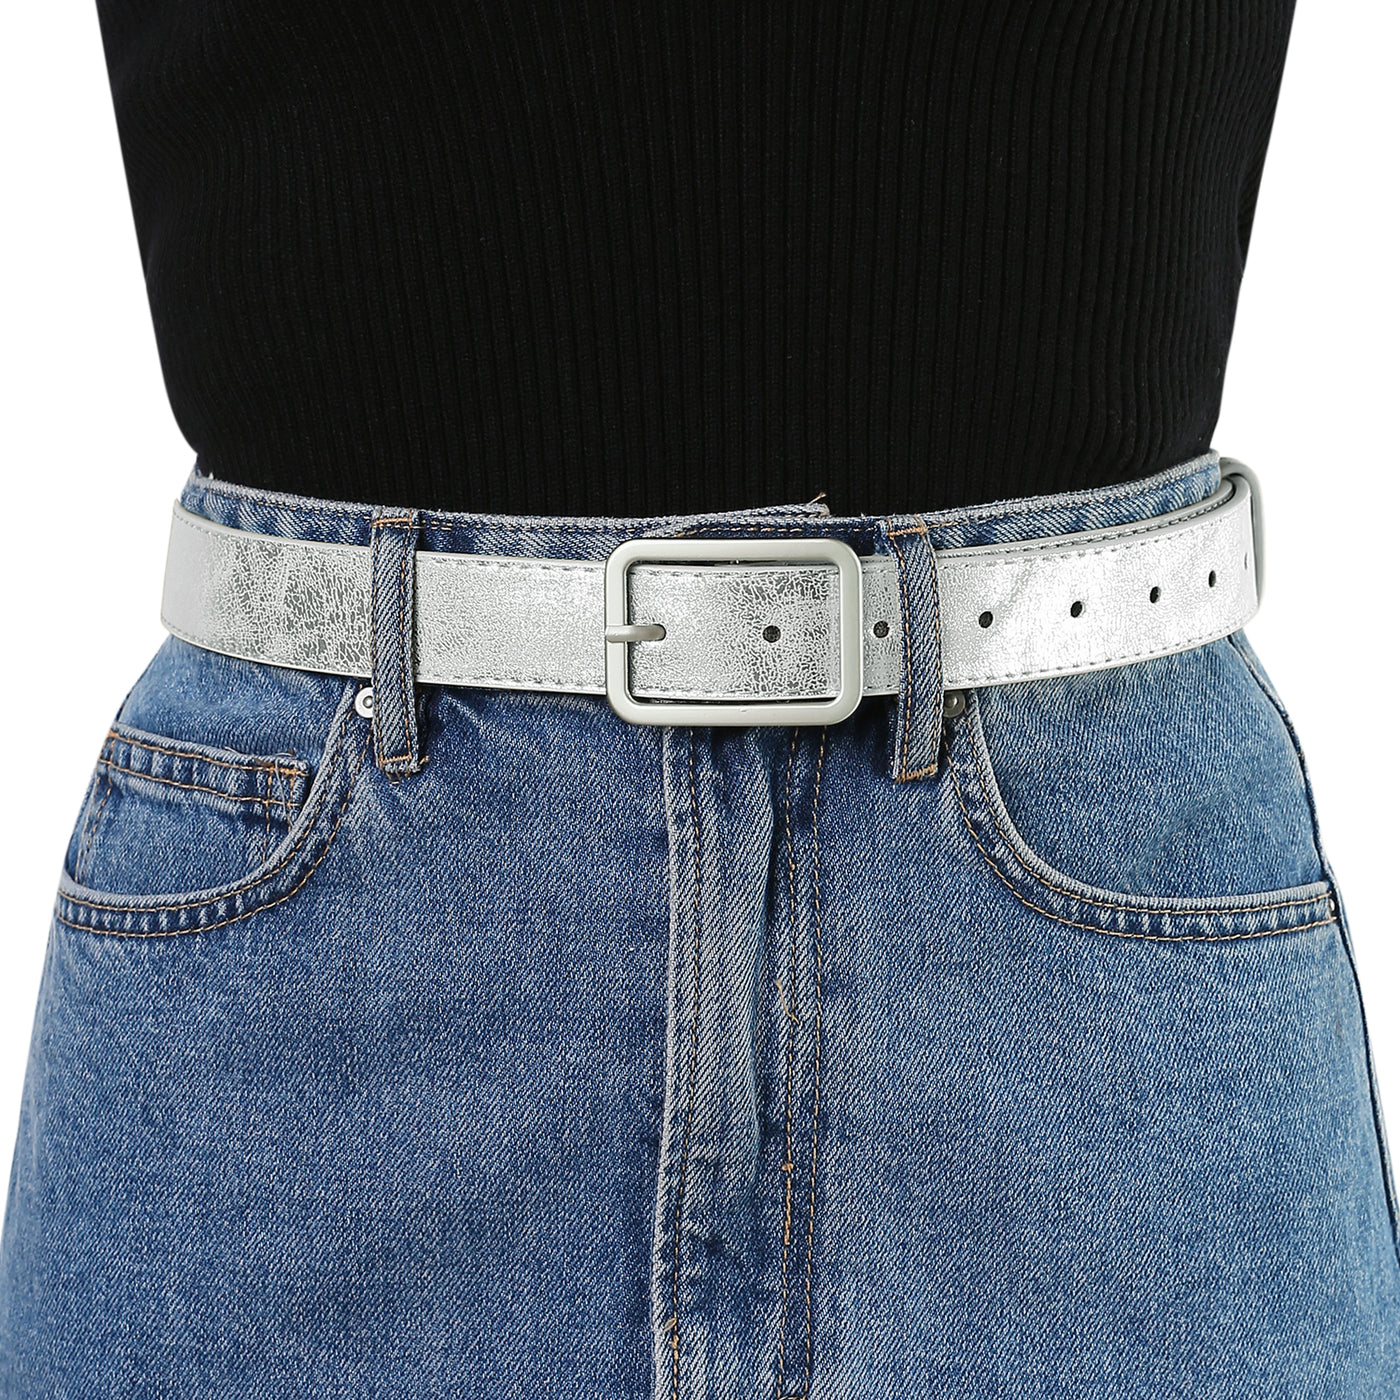 Allegra K Ladies Skinny Belts PU Casual Shiny Waist Belt for Dress Jeans Single Pin Buckle